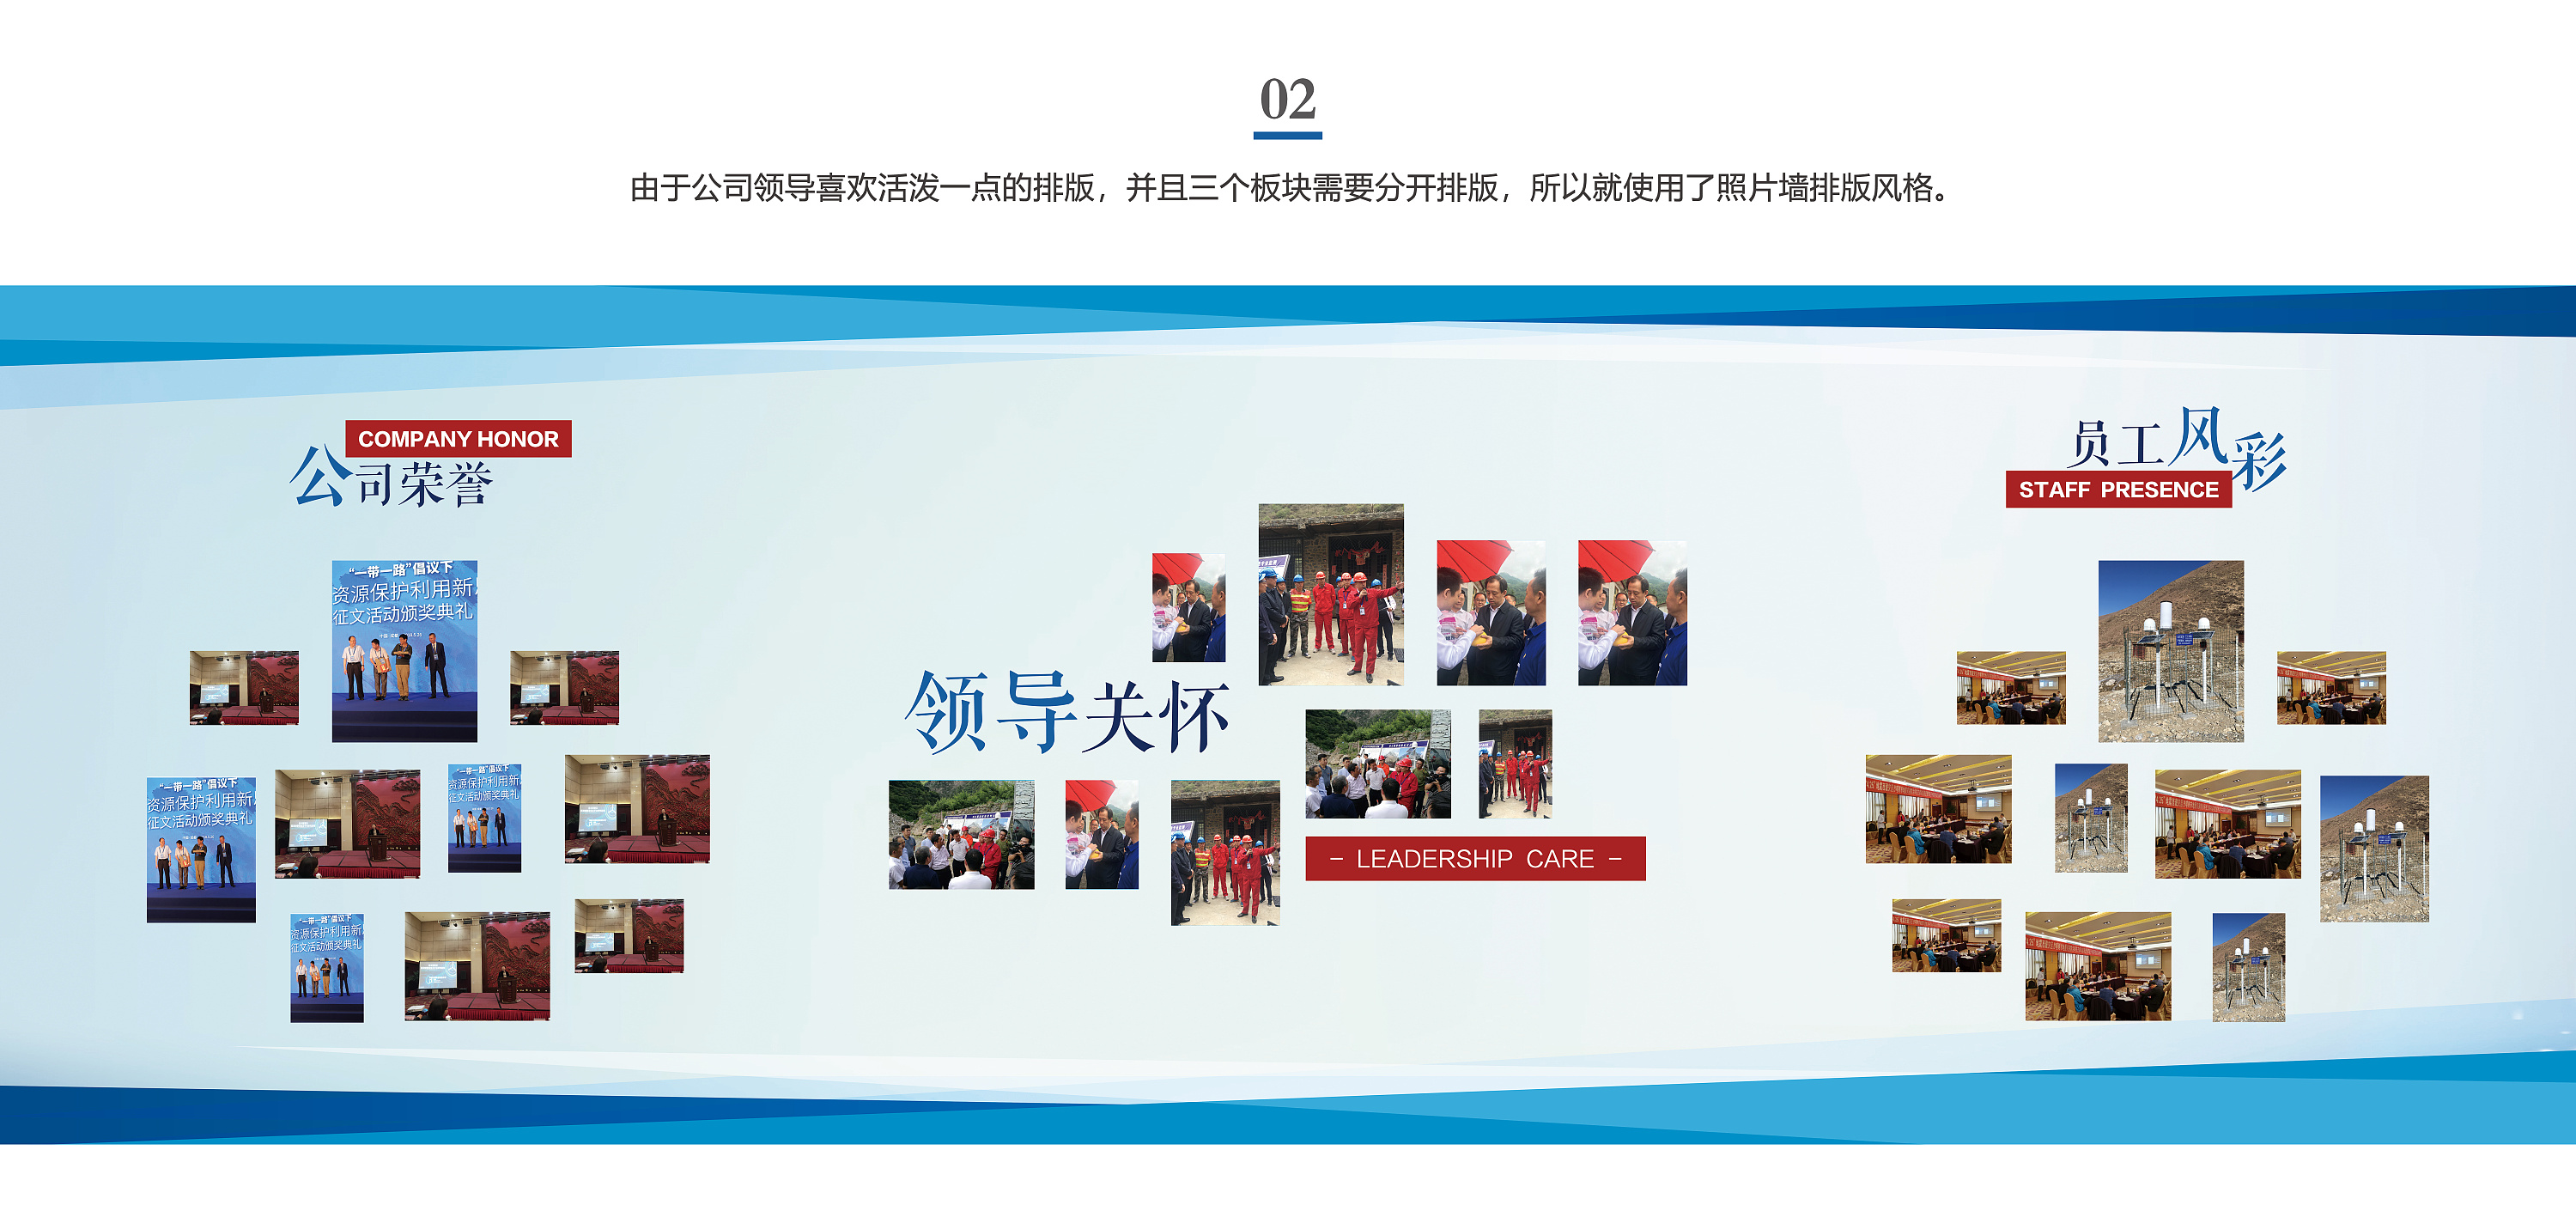 立体树形员工风采照片墙企业文化墙模板定制-深圳市启橙广告有限公司